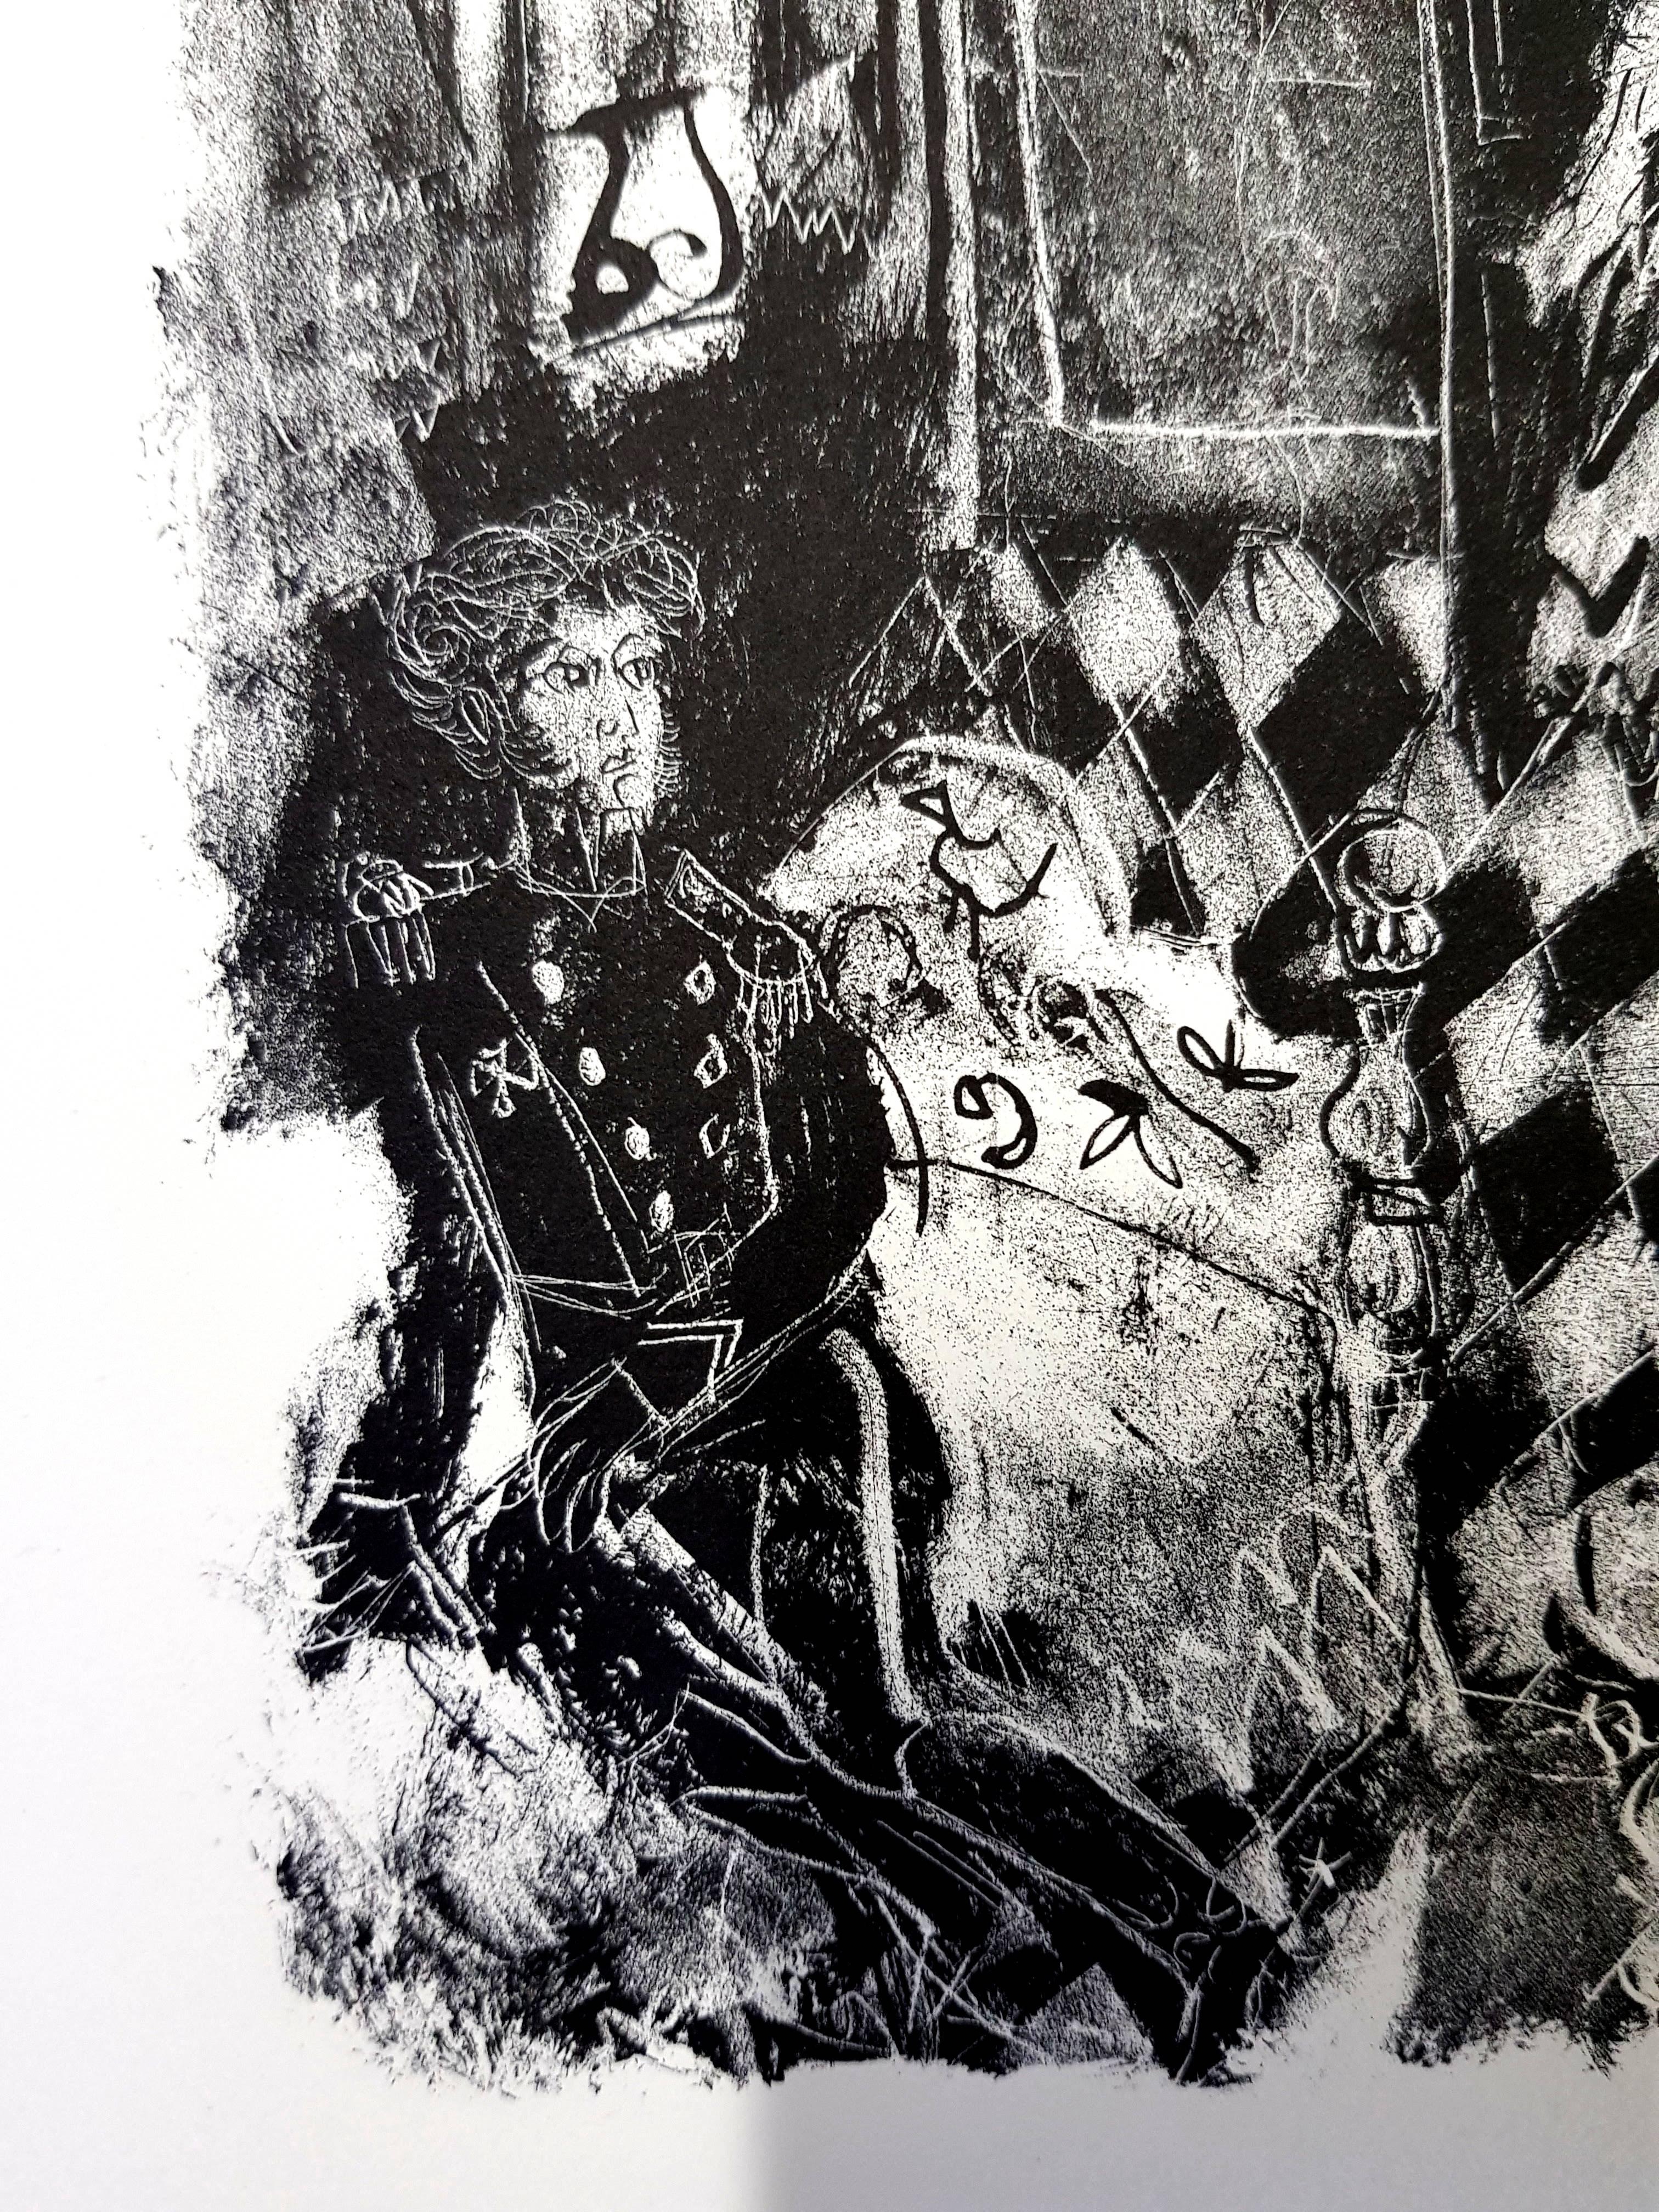 Antoni Clavé - Original Lithograph - For Alexander Pushkin's Queen of Spades
Dimensions: 325 x 247 mm.
1946
Original lithograph of Antoni Clavé 
Edition: 300 
The Queen of Spades. Translation by Prosper Mérimée. In Paris, Editions du Pré aux